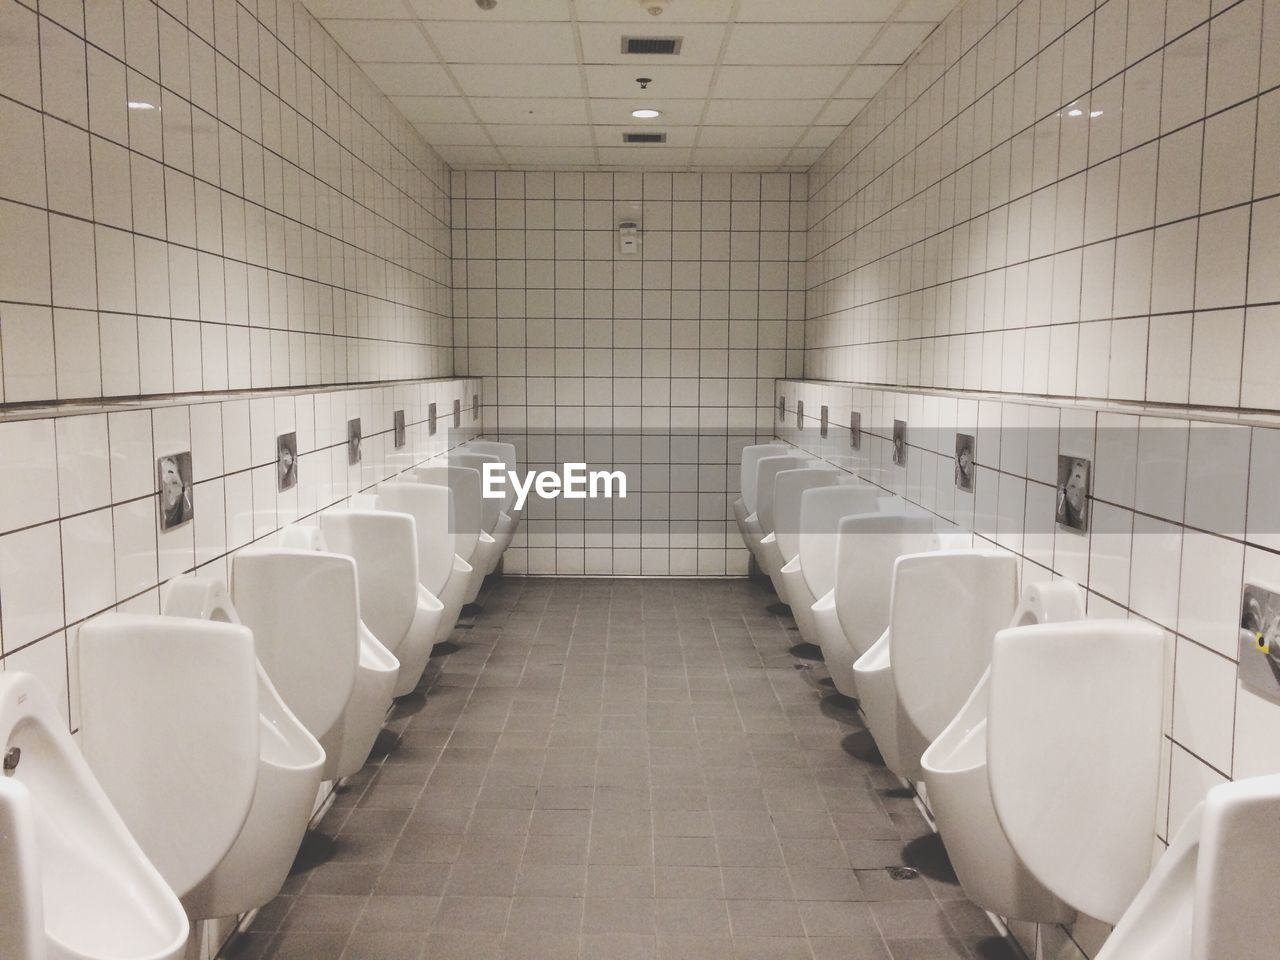 Urinals in illuminated public restroom